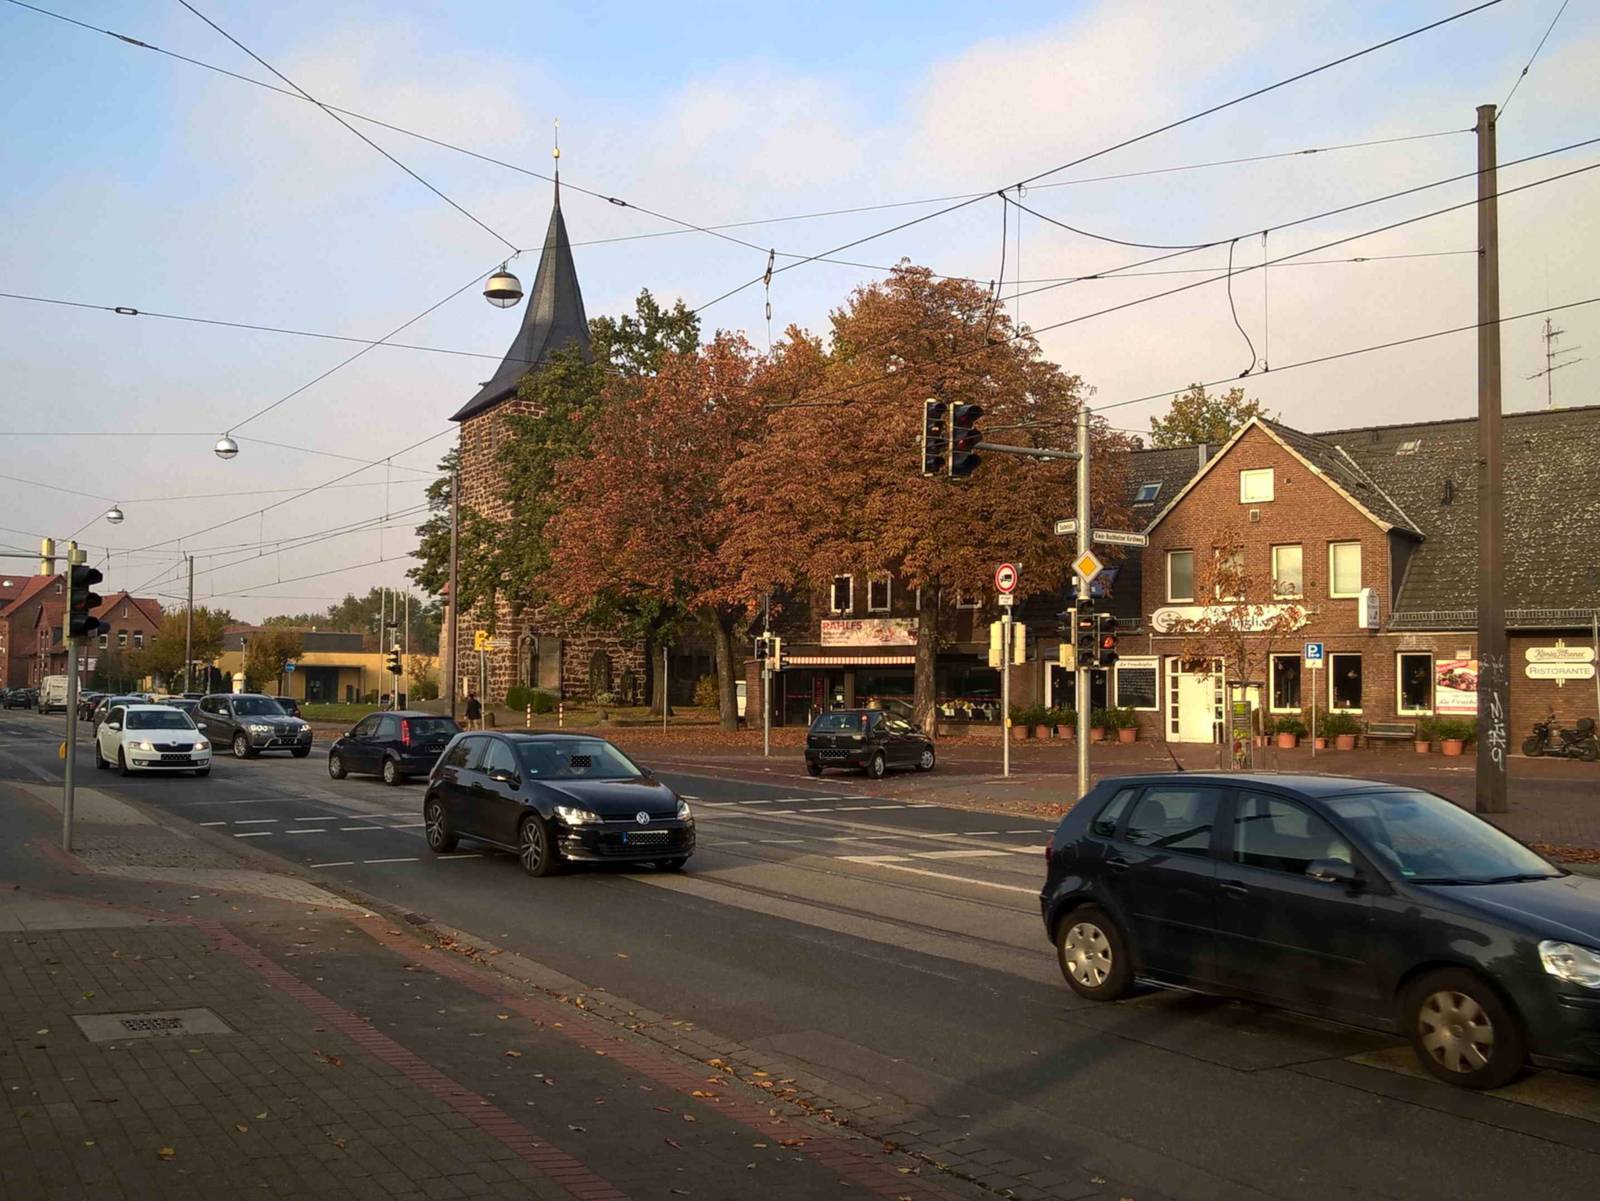 Auf dem Bild ist eine Kreuzung in Bothfeld zu sehen. Auf der Straße befinden sich Autos. Im Hintergrund ist ein altes Gebäude mit einem großen alten Baum zu sehen. Die Blätter des Baums sind herbstlich. Neben dem Haus ist eine Kirche zu sehen.